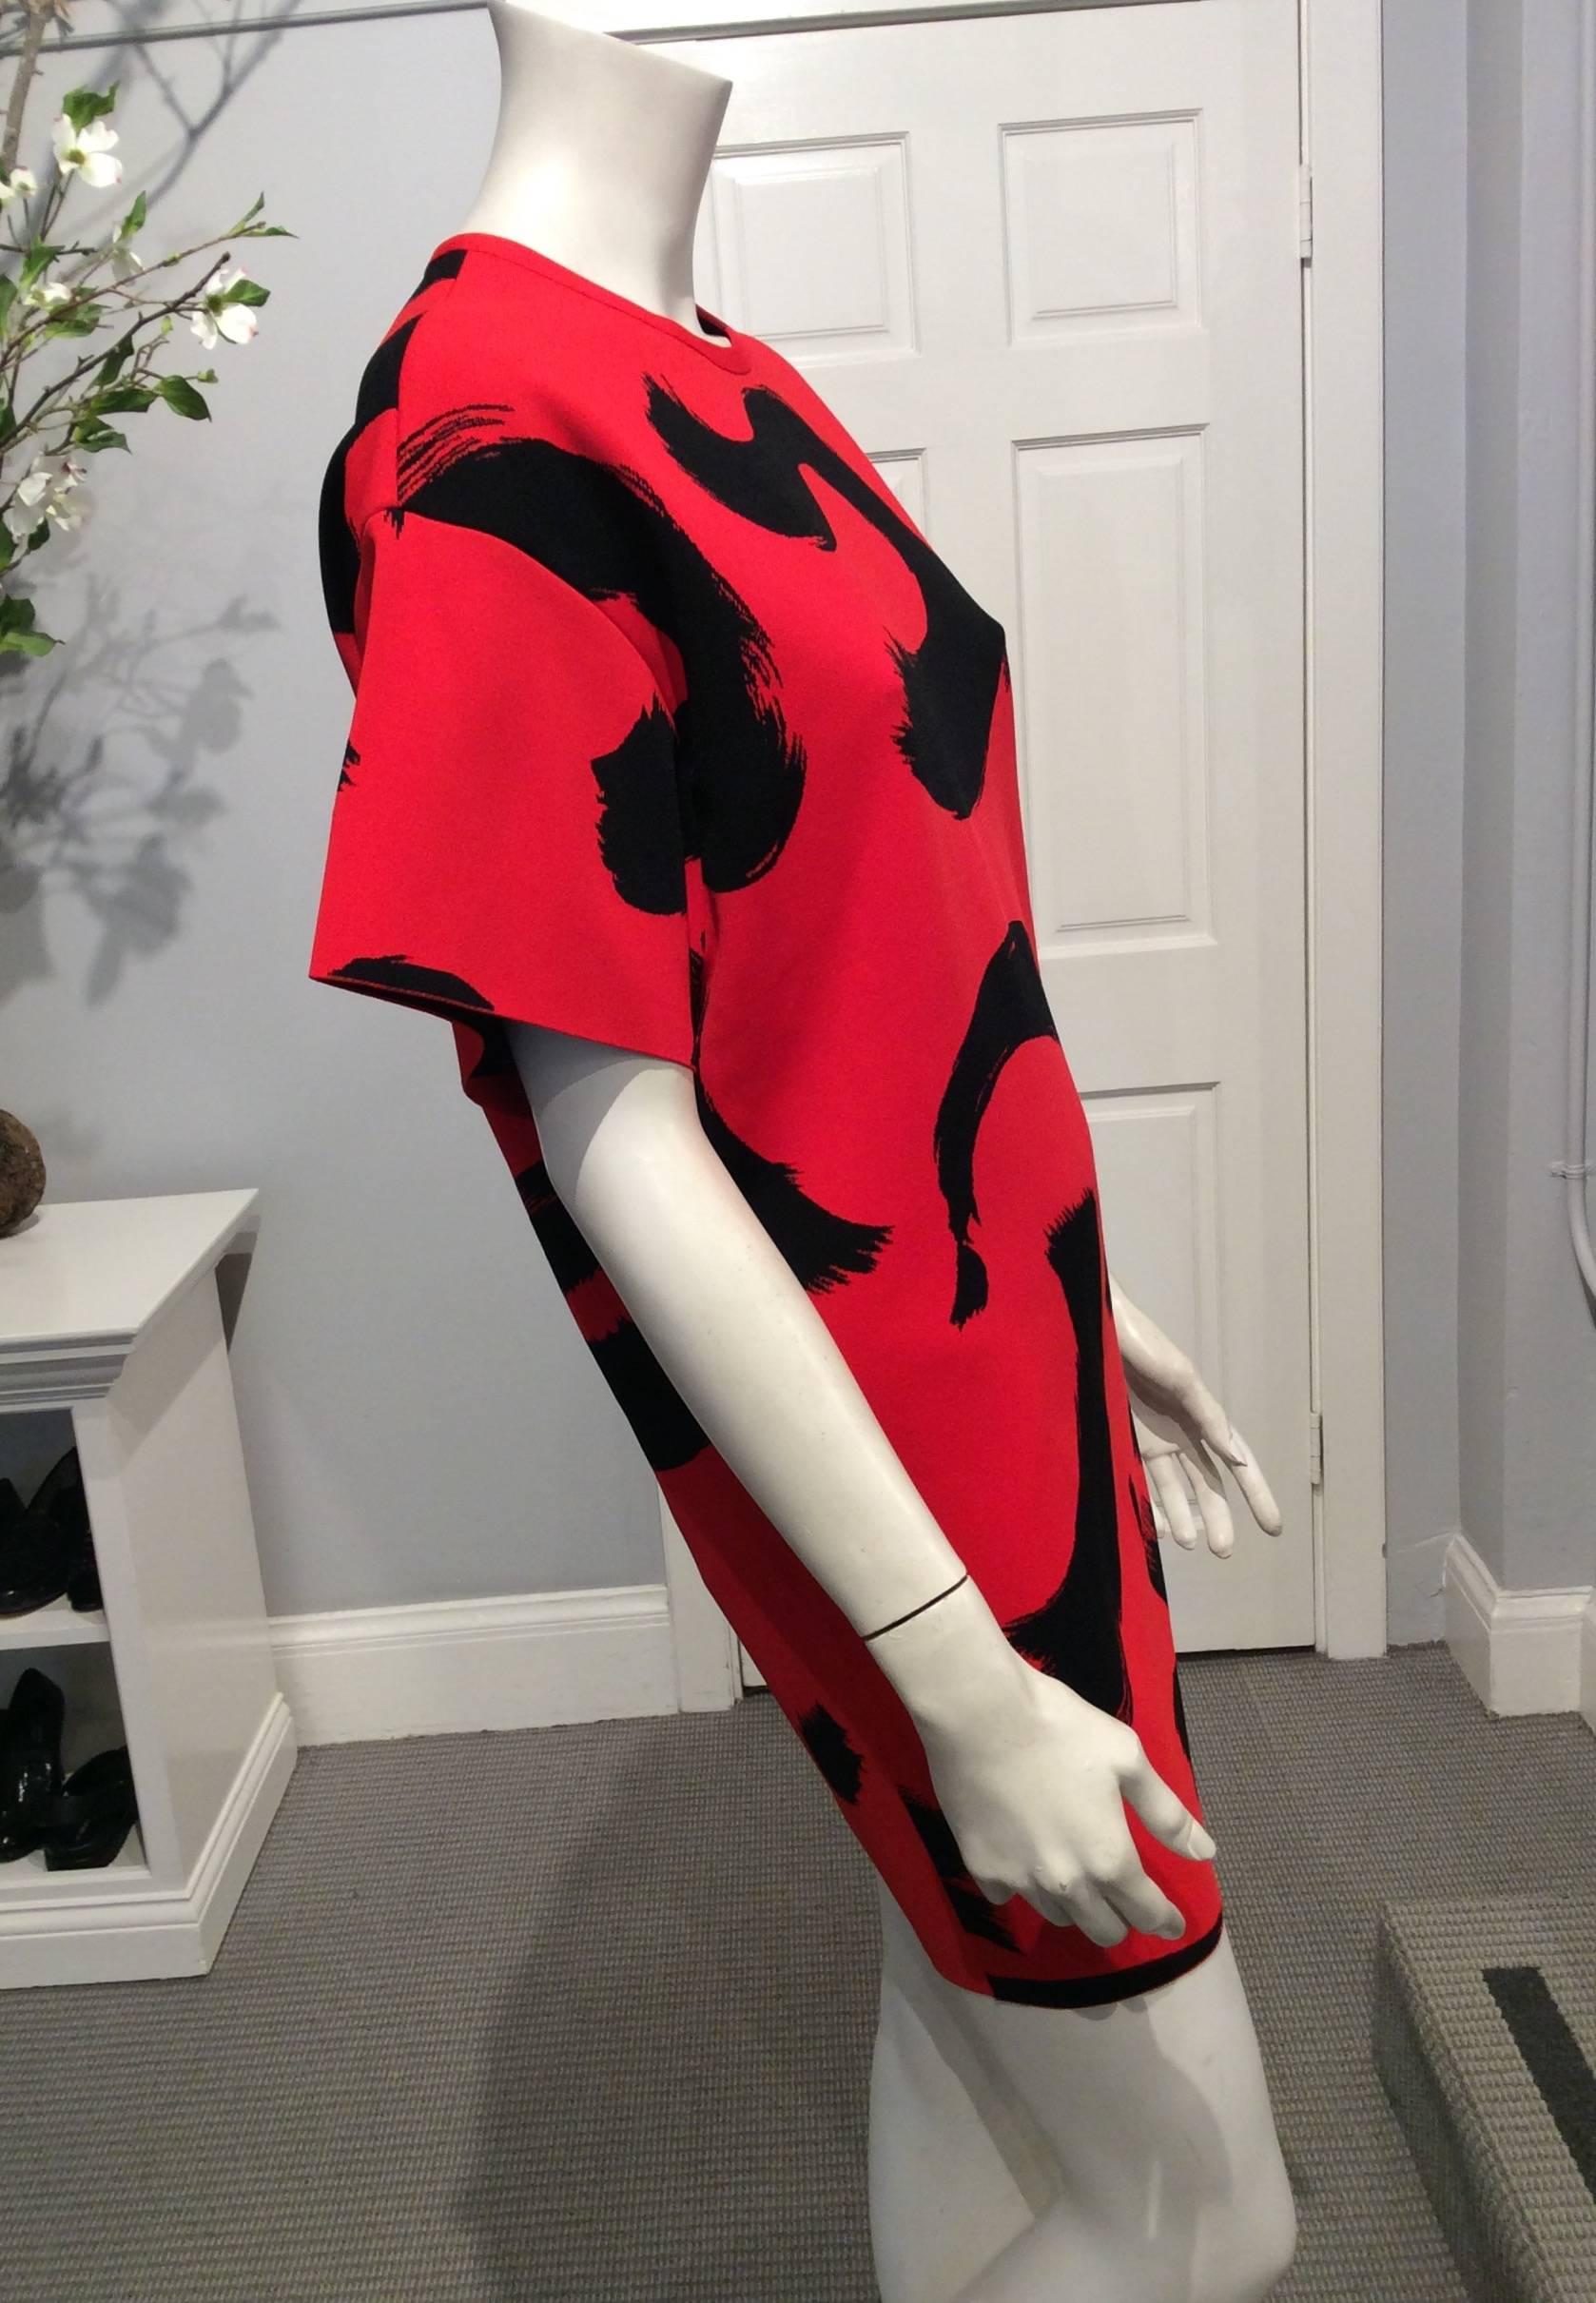 Celine short sleeve red dress with black paint brushed design.